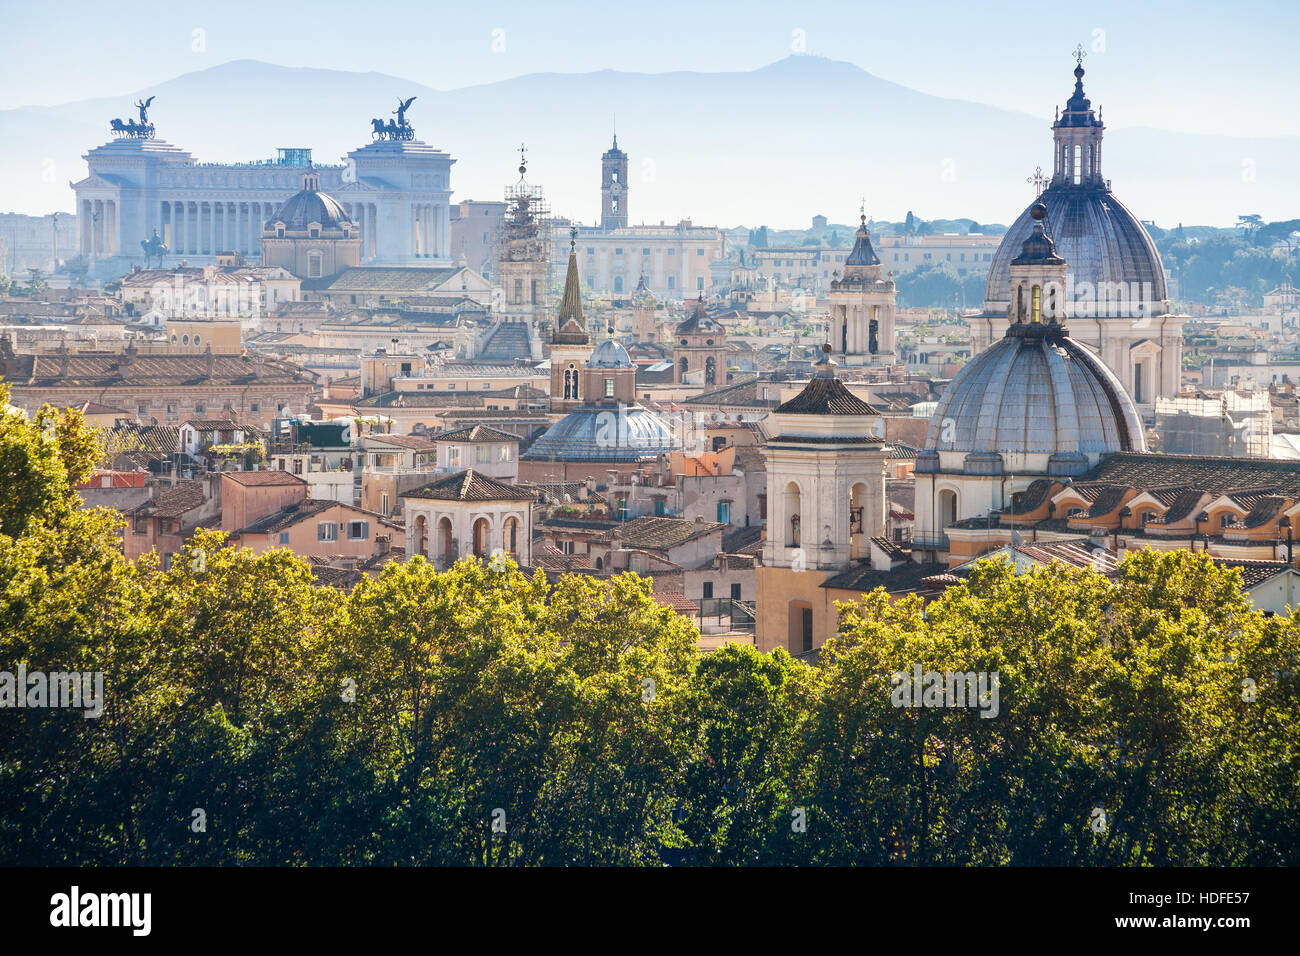 Voyage d'Italie - vue ci-dessus du centre historique de la ville de Rome sur le côté de la colline du Capitole du Château de St Angel Banque D'Images